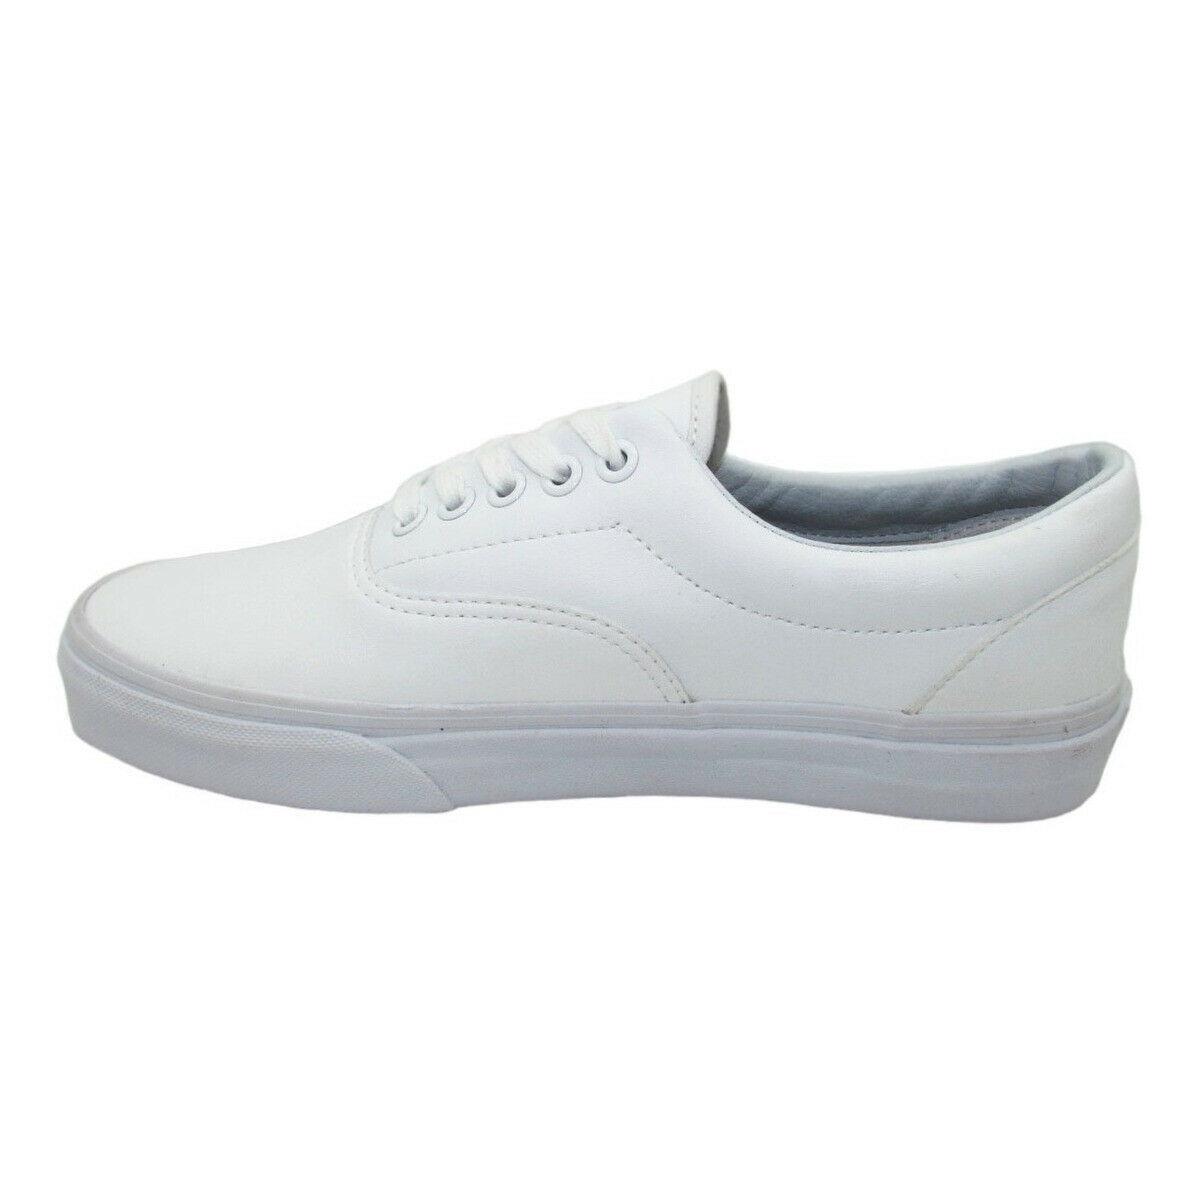 Vans Era Classic Tumble True White Skate Shoes Mens 7.0 Womens 8.5 - white